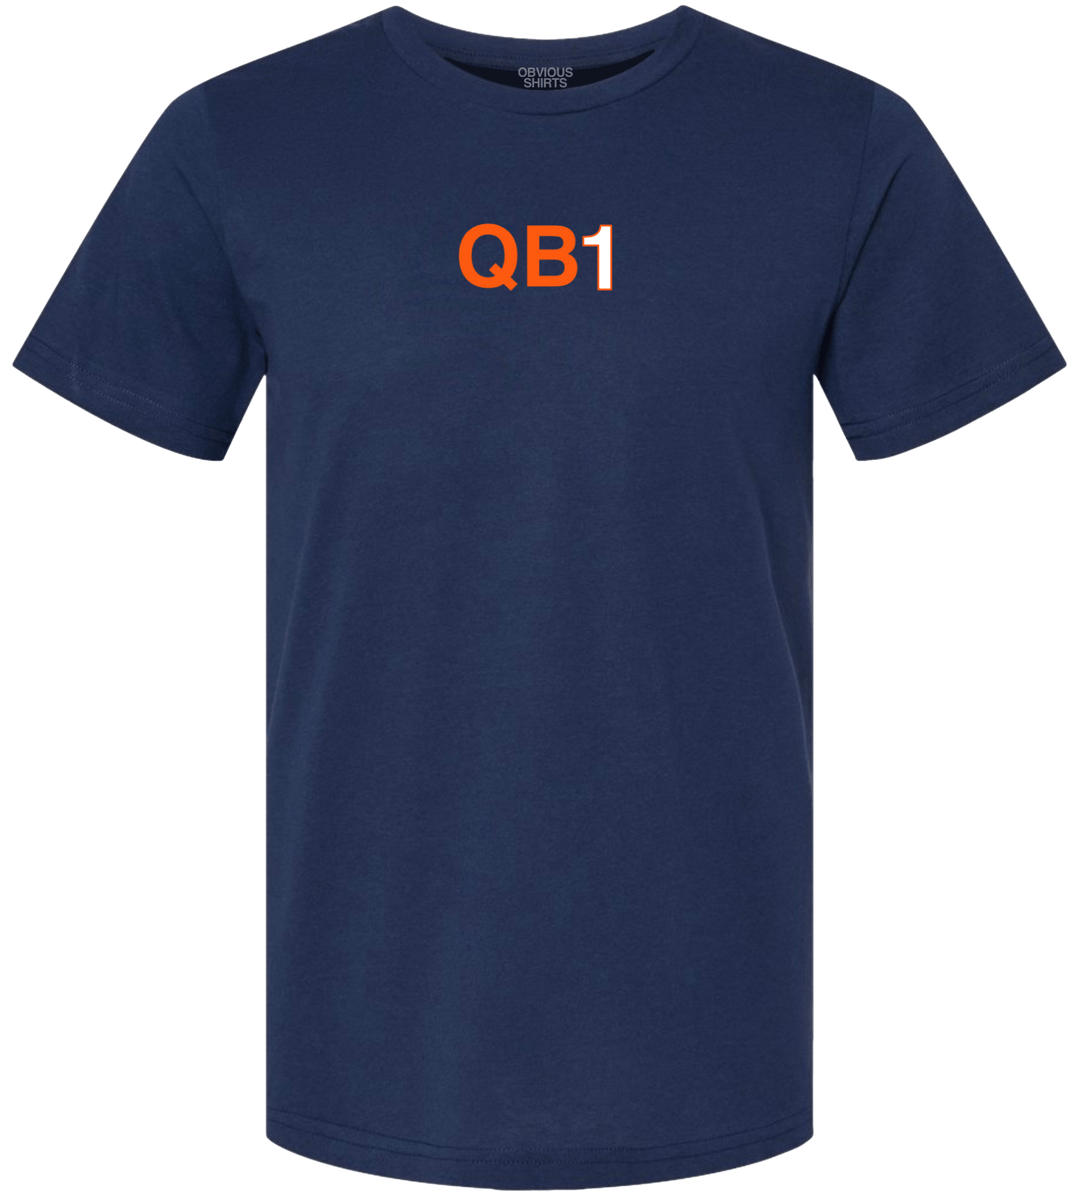 QB1 - OBVIOUS SHIRTS